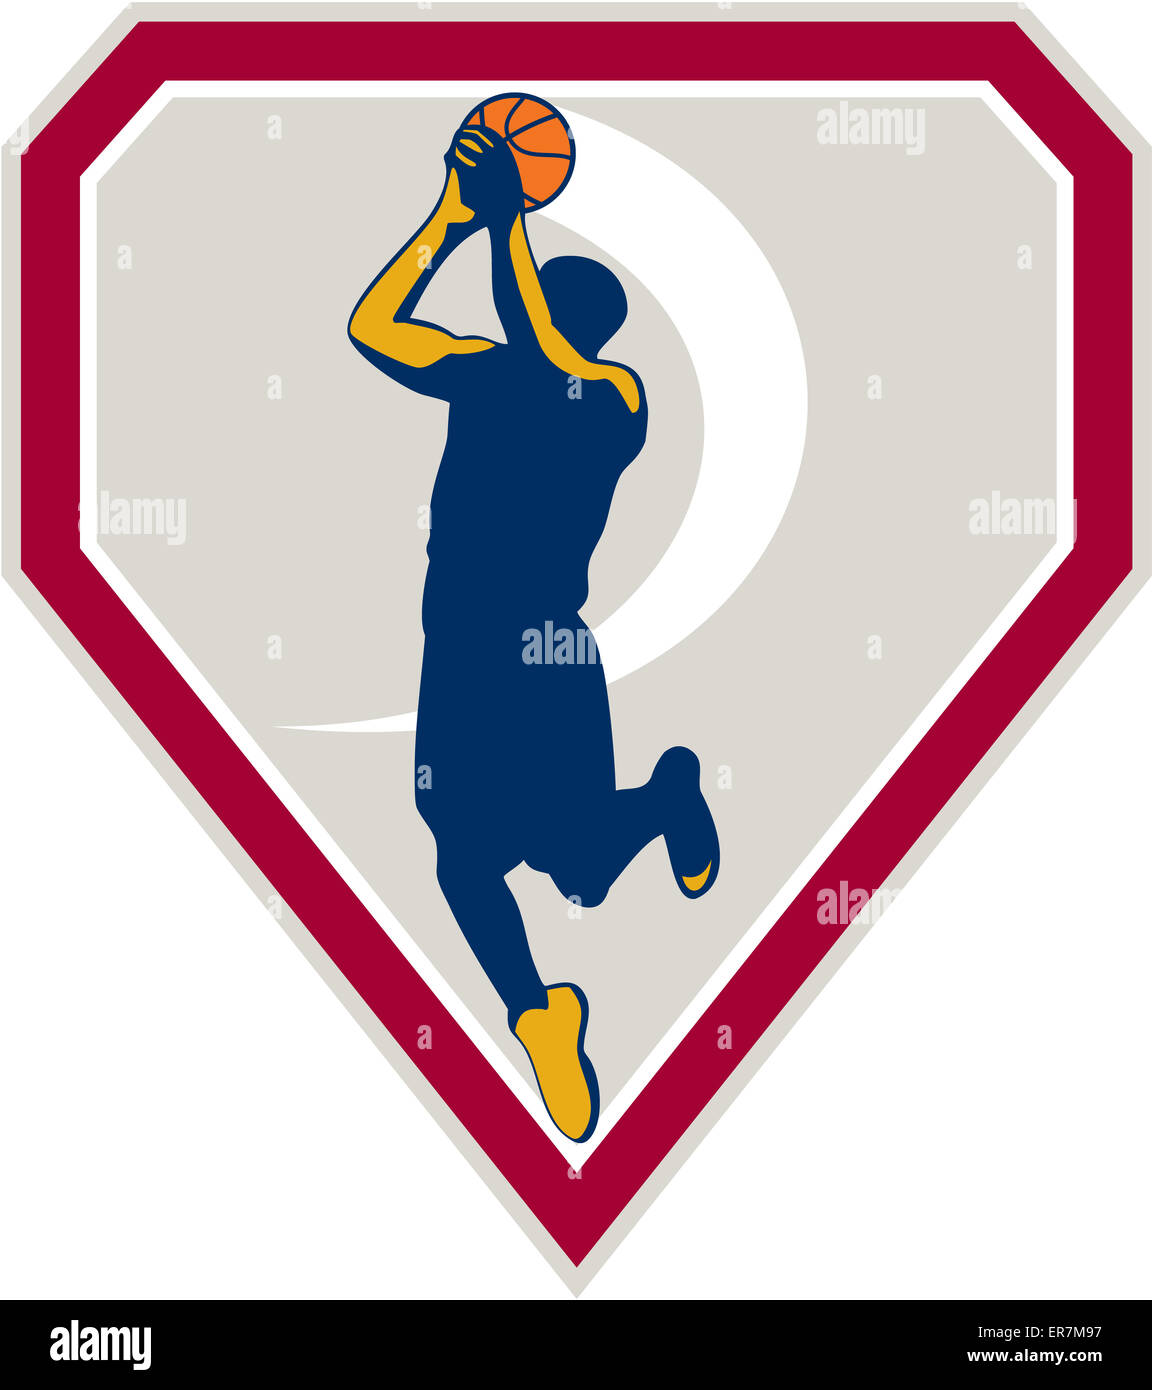 Beispiel für einen Basketball-Spieler Sprungwurf Jumper schießen springen Satz innen Schild Wappen auf isoliert Hintergrund getan im retro-Stil. Stockfoto